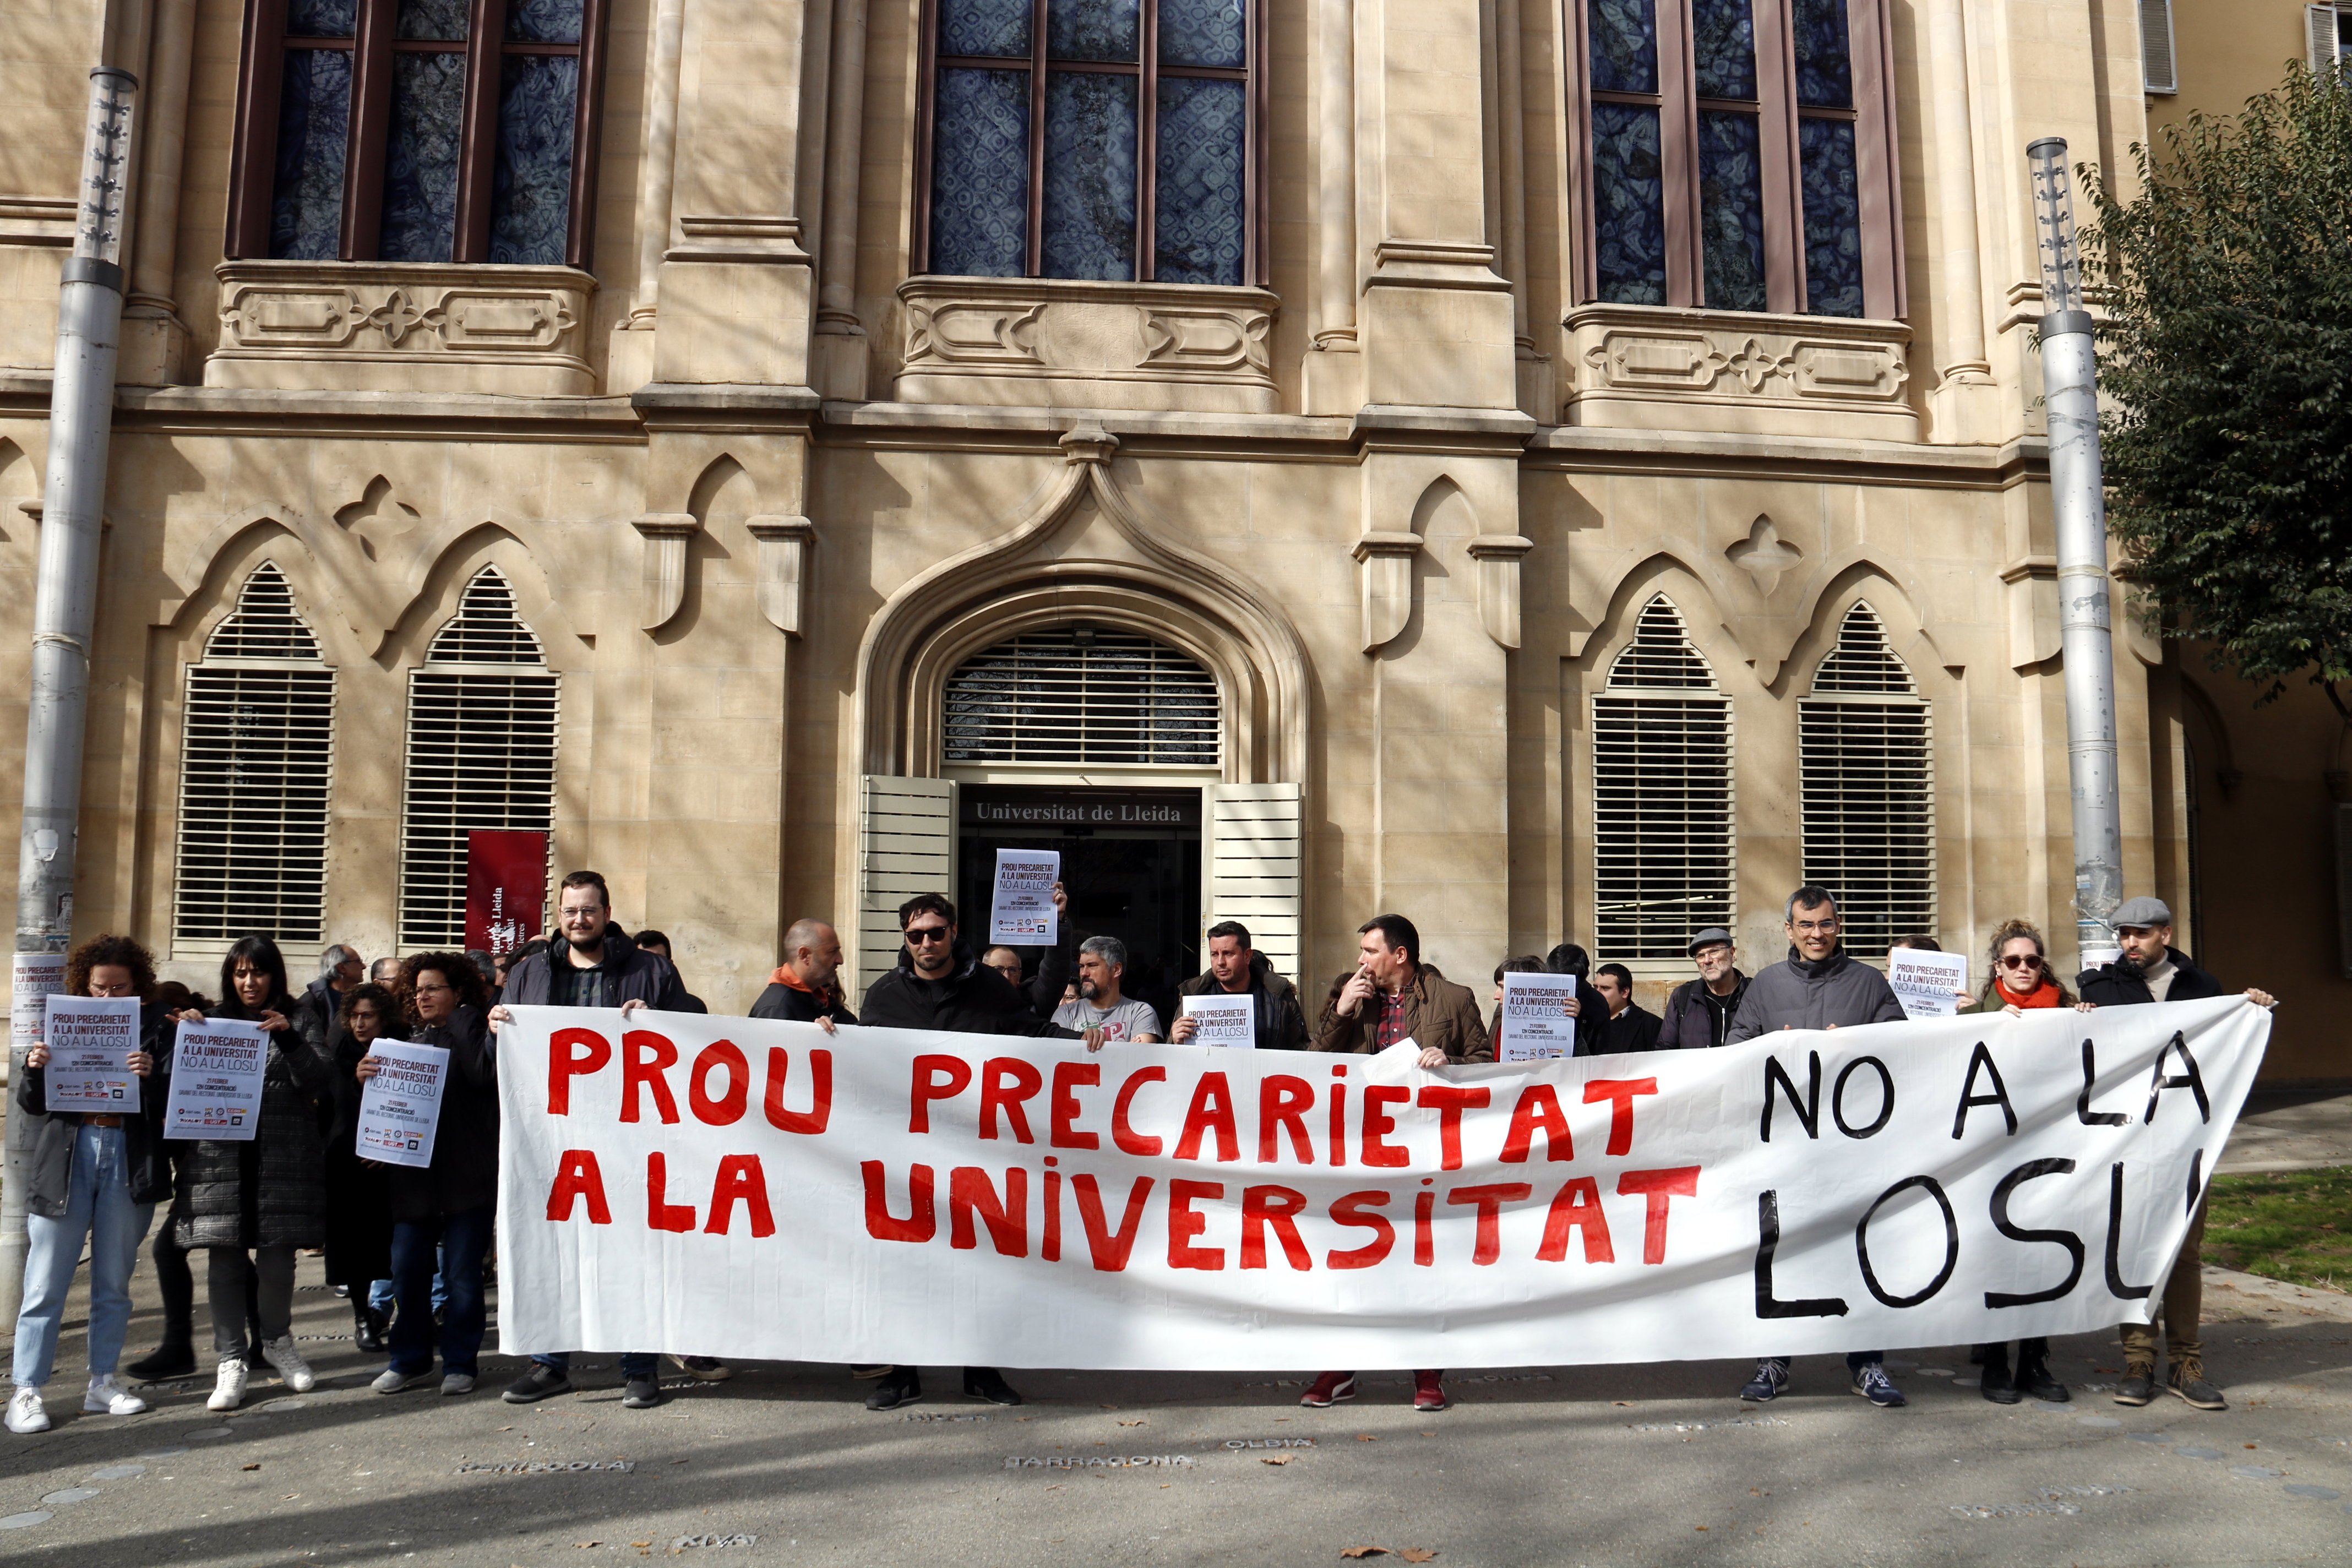 Los profesores asociados de la UAB, UB y UPC protestan contra la precariedad laboral